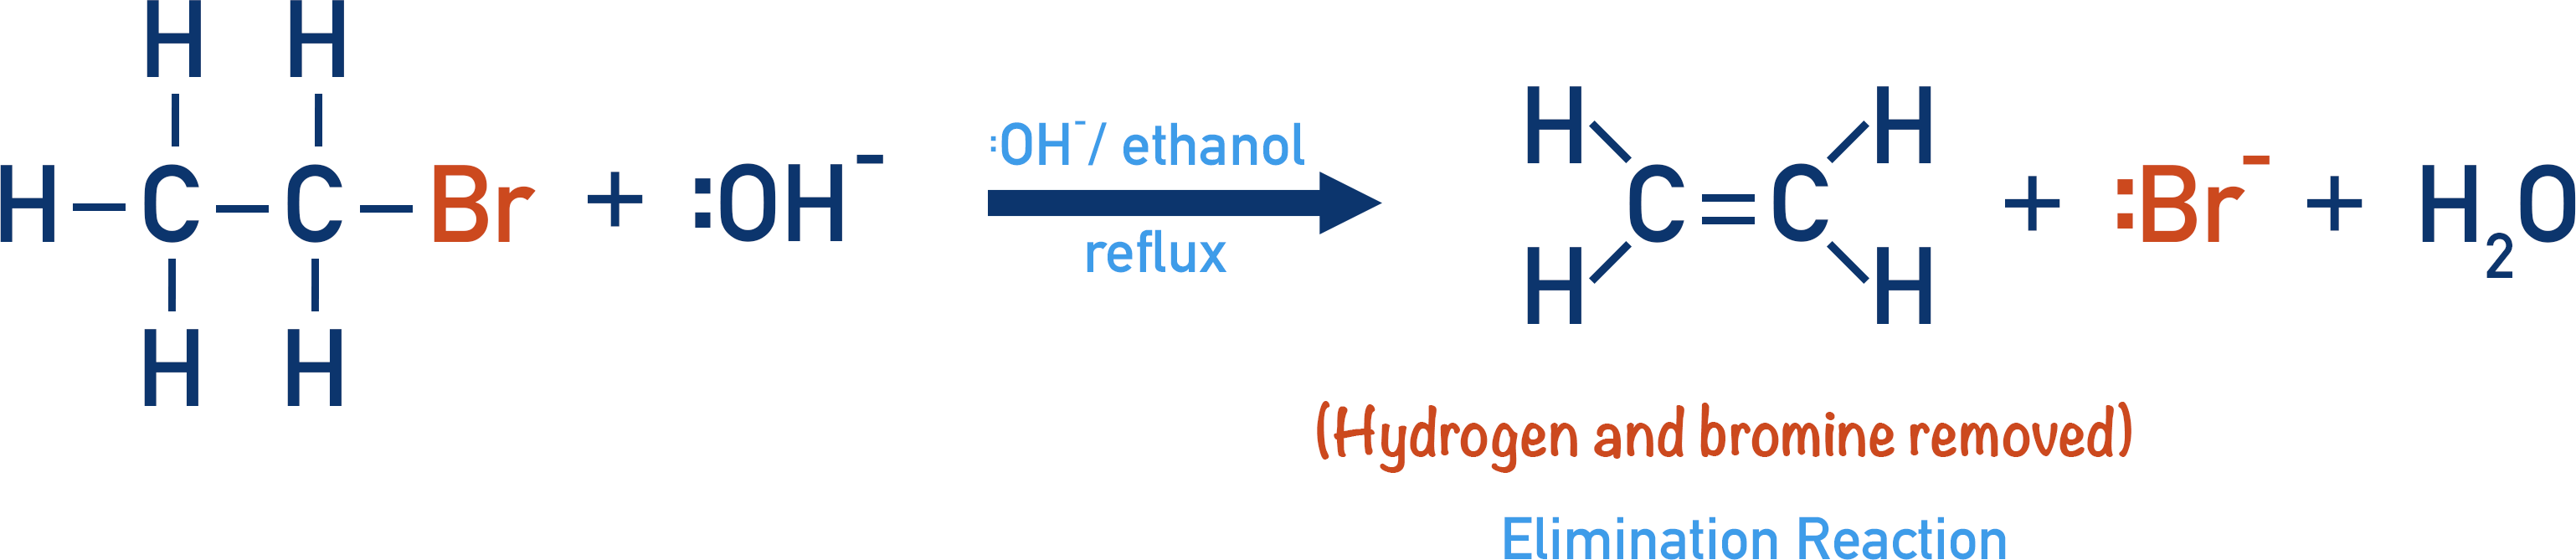 elimination reaction halogenoalkane bromoethane with hydroxide ion to form ethene